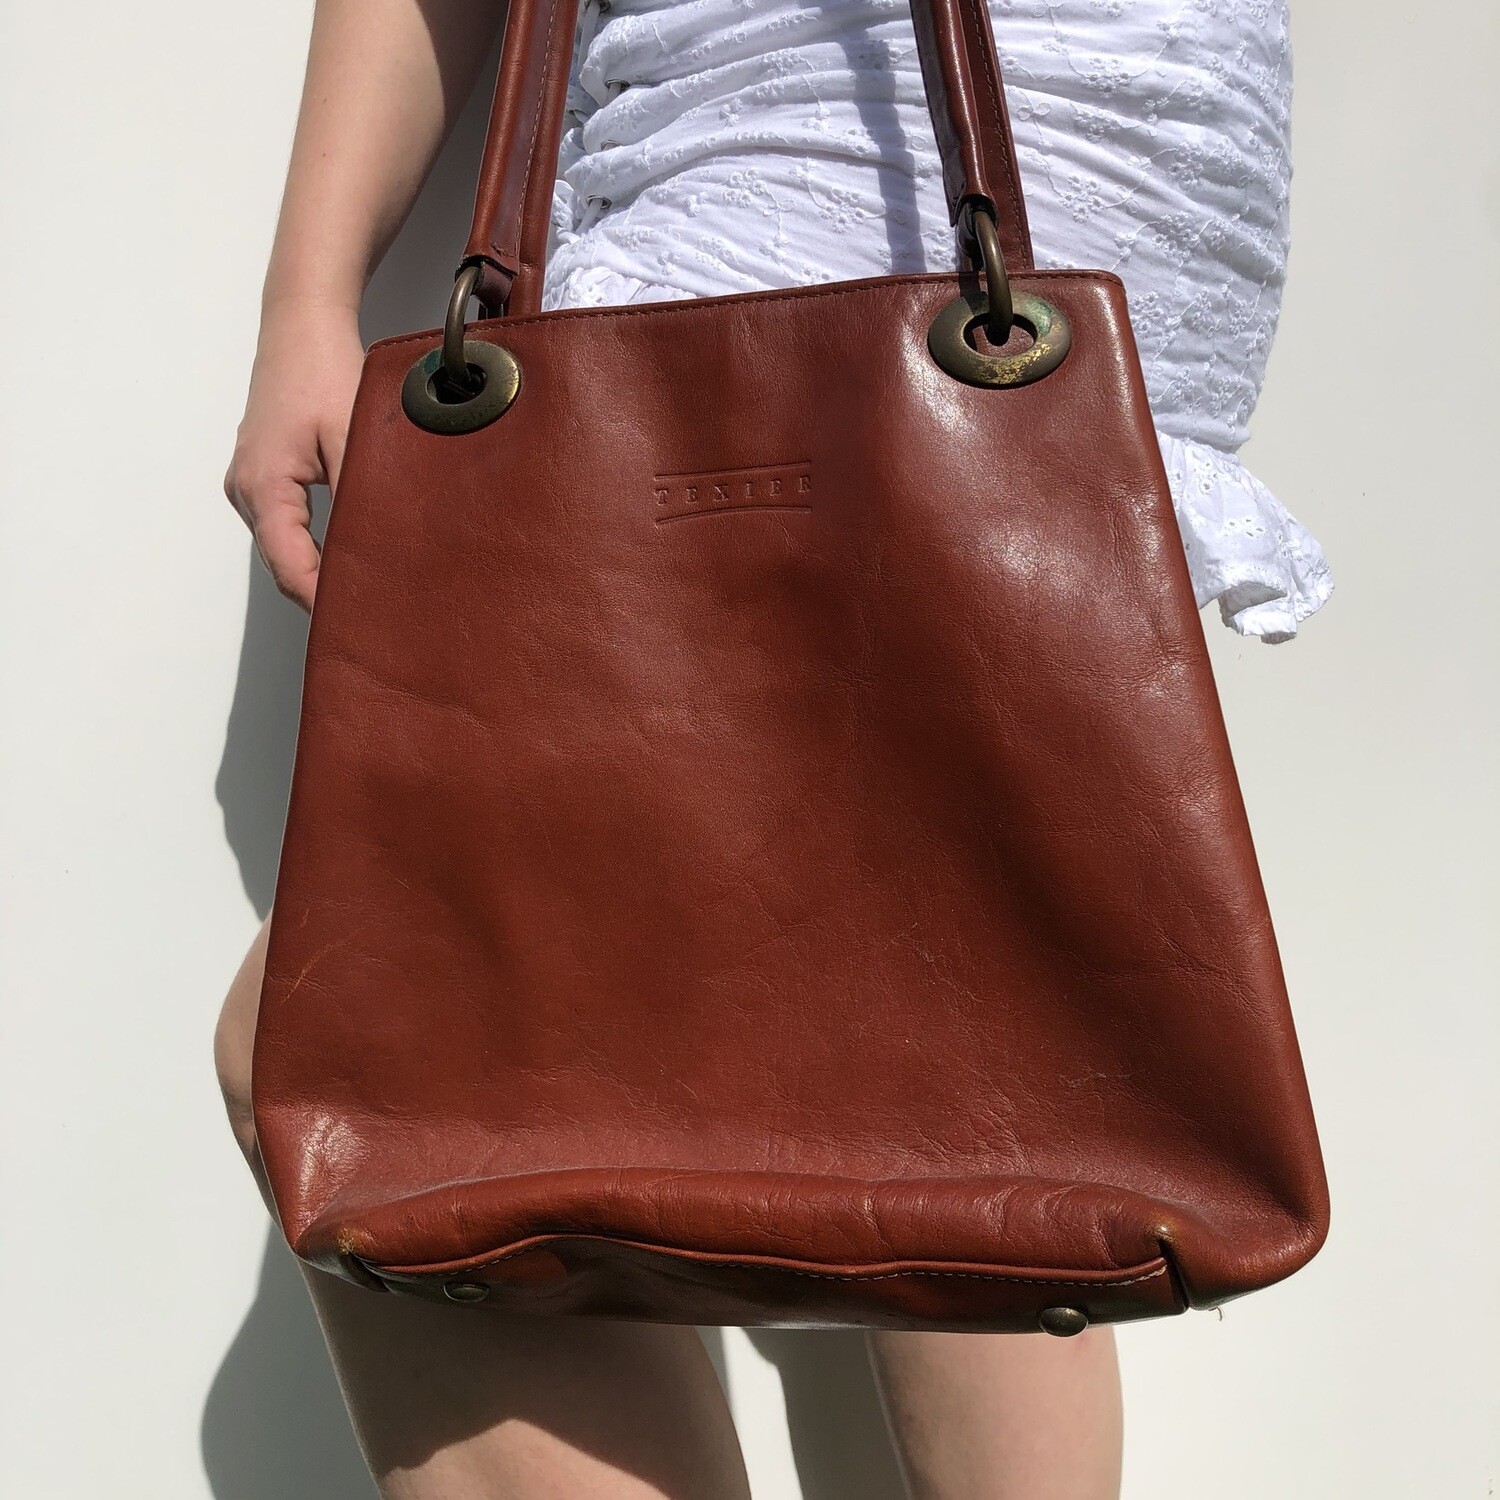 Vintage Texier Leather Handbag